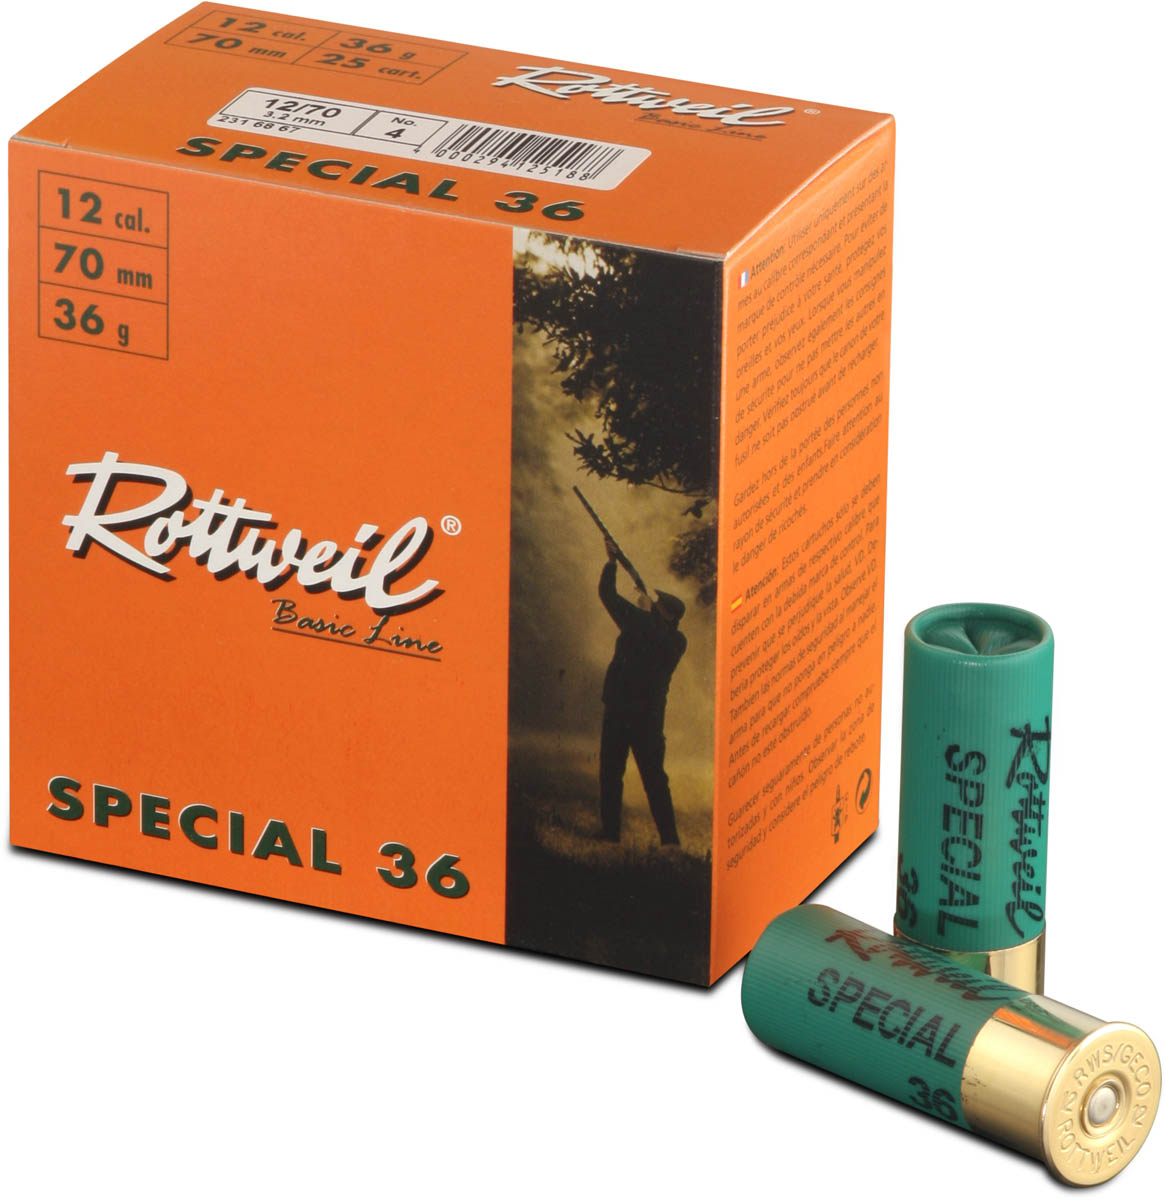 Rottweil 12/70 Special 36 3,5mm - 36g - für Jagden mit hohen Schusszahlen